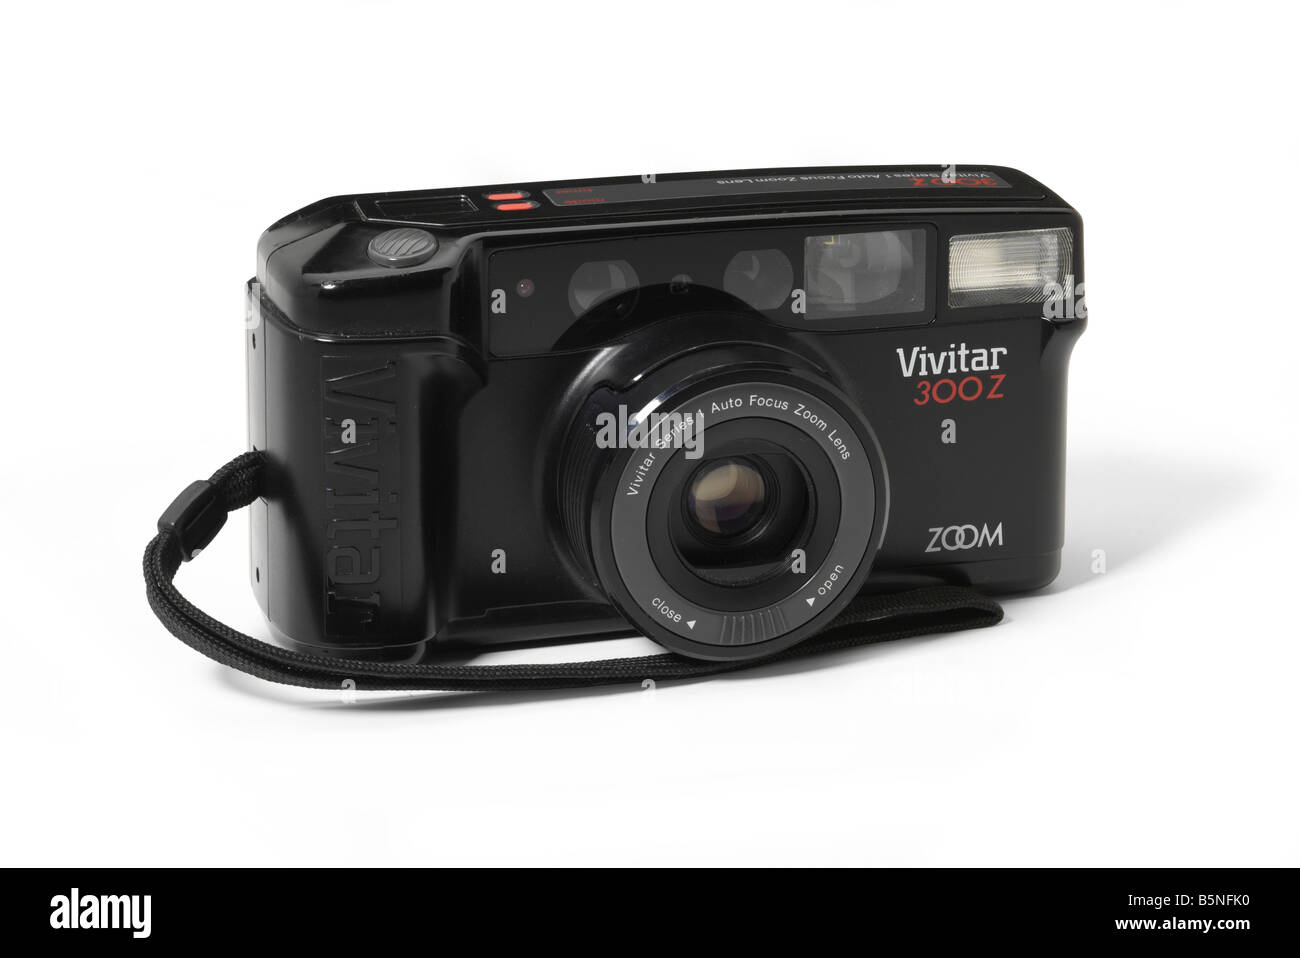 Fotocamera con zoom da 35 mm Vivitar 300Z Foto Stock